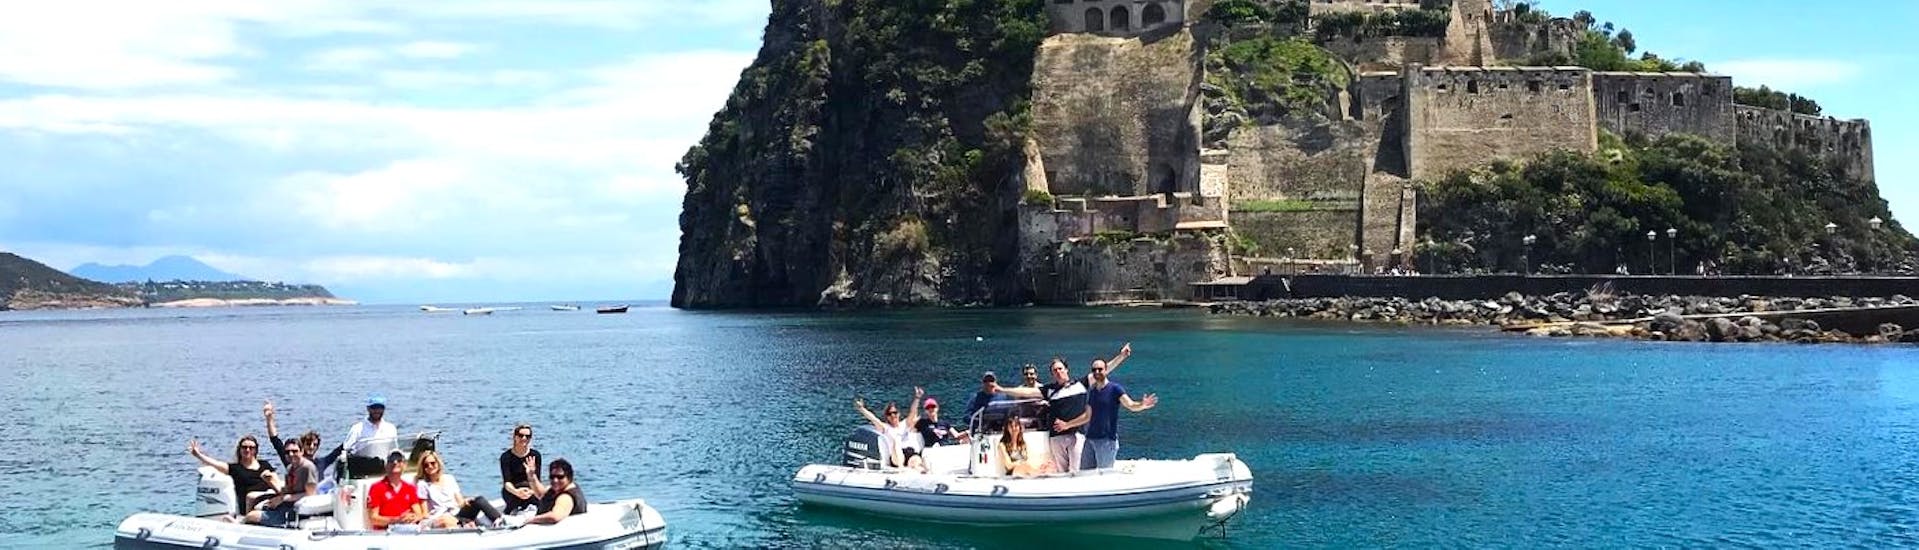 Uitzicht op het Aragonese kasteel dat je kunt zien tijdens de RIB boottocht naar Ischia en Procida met aperitief en snorkelen met Seaside Napoli.